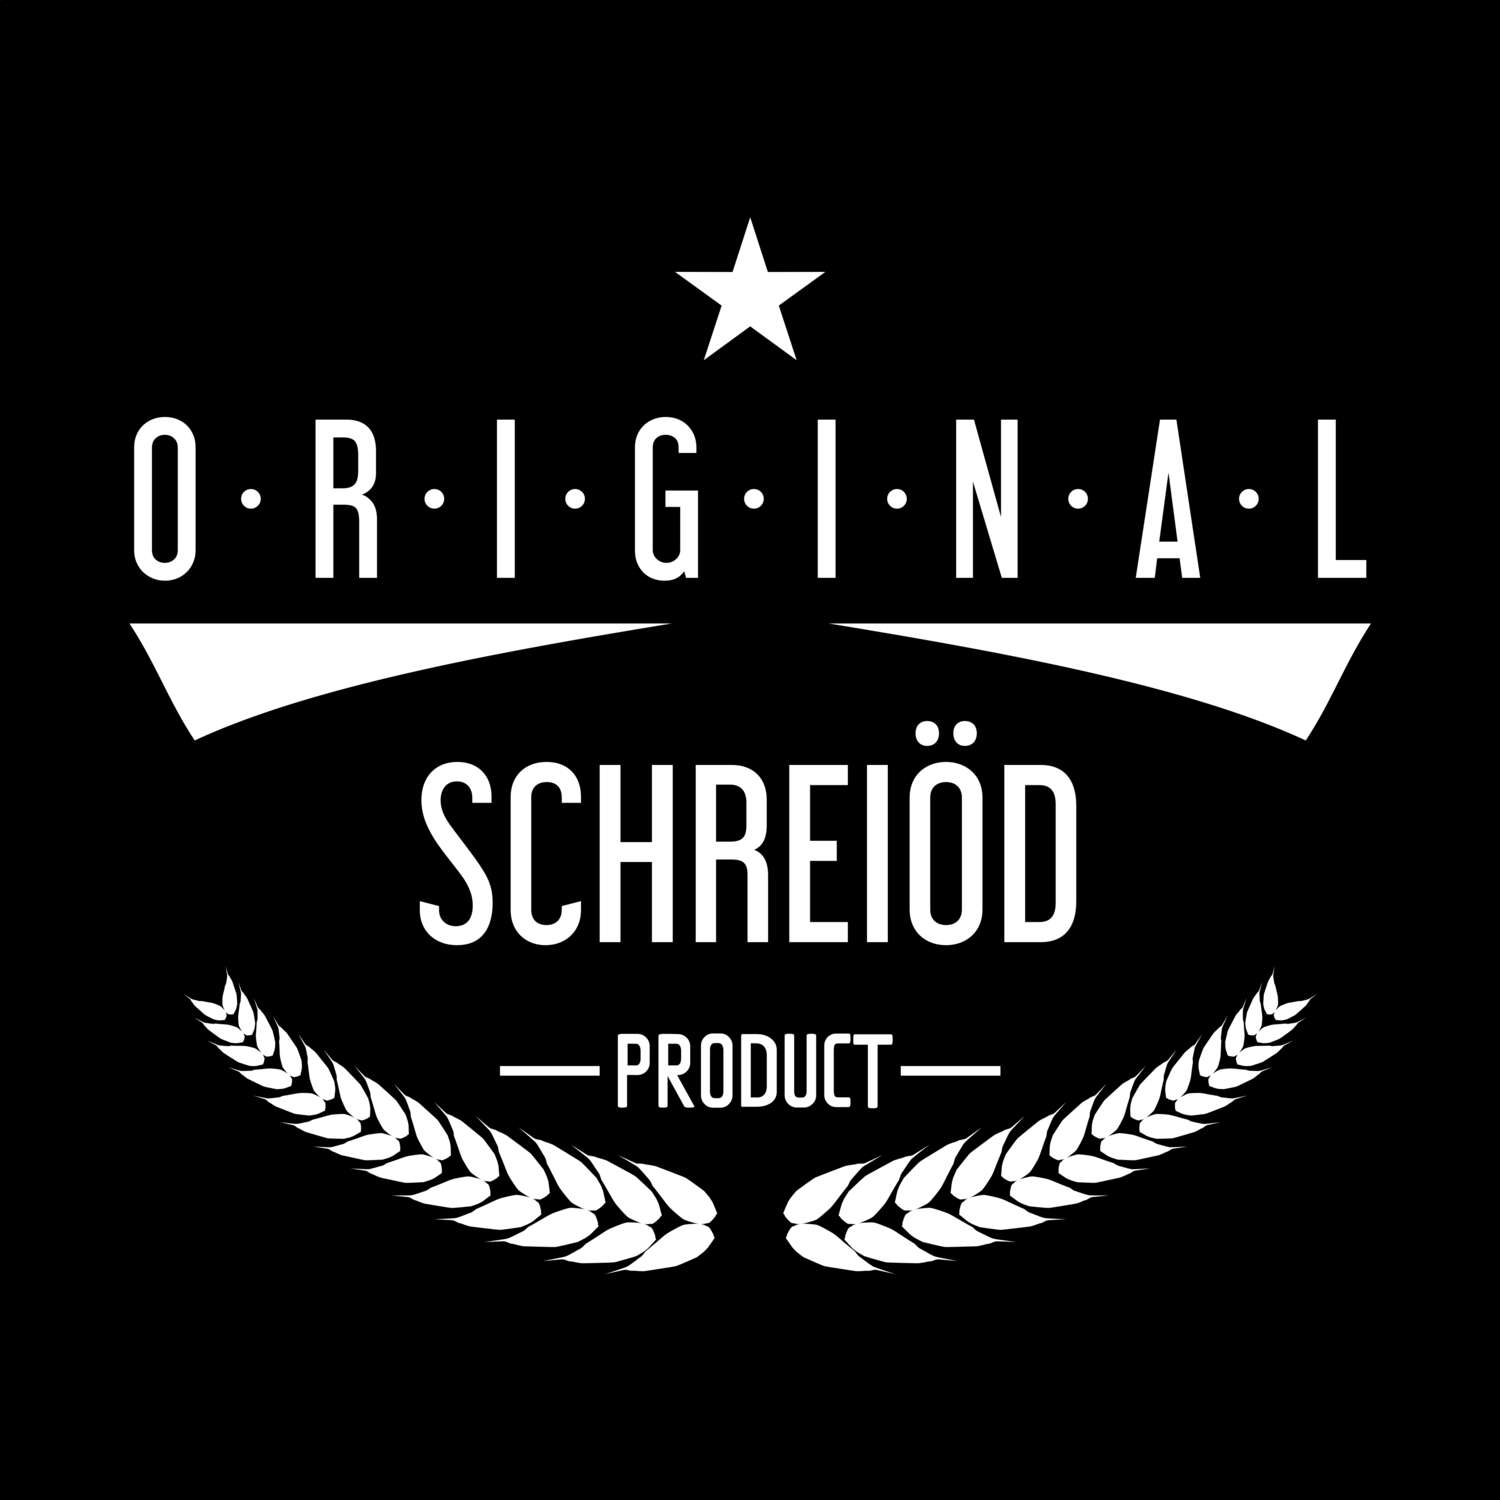 Schreiöd T-Shirt »Original Product«